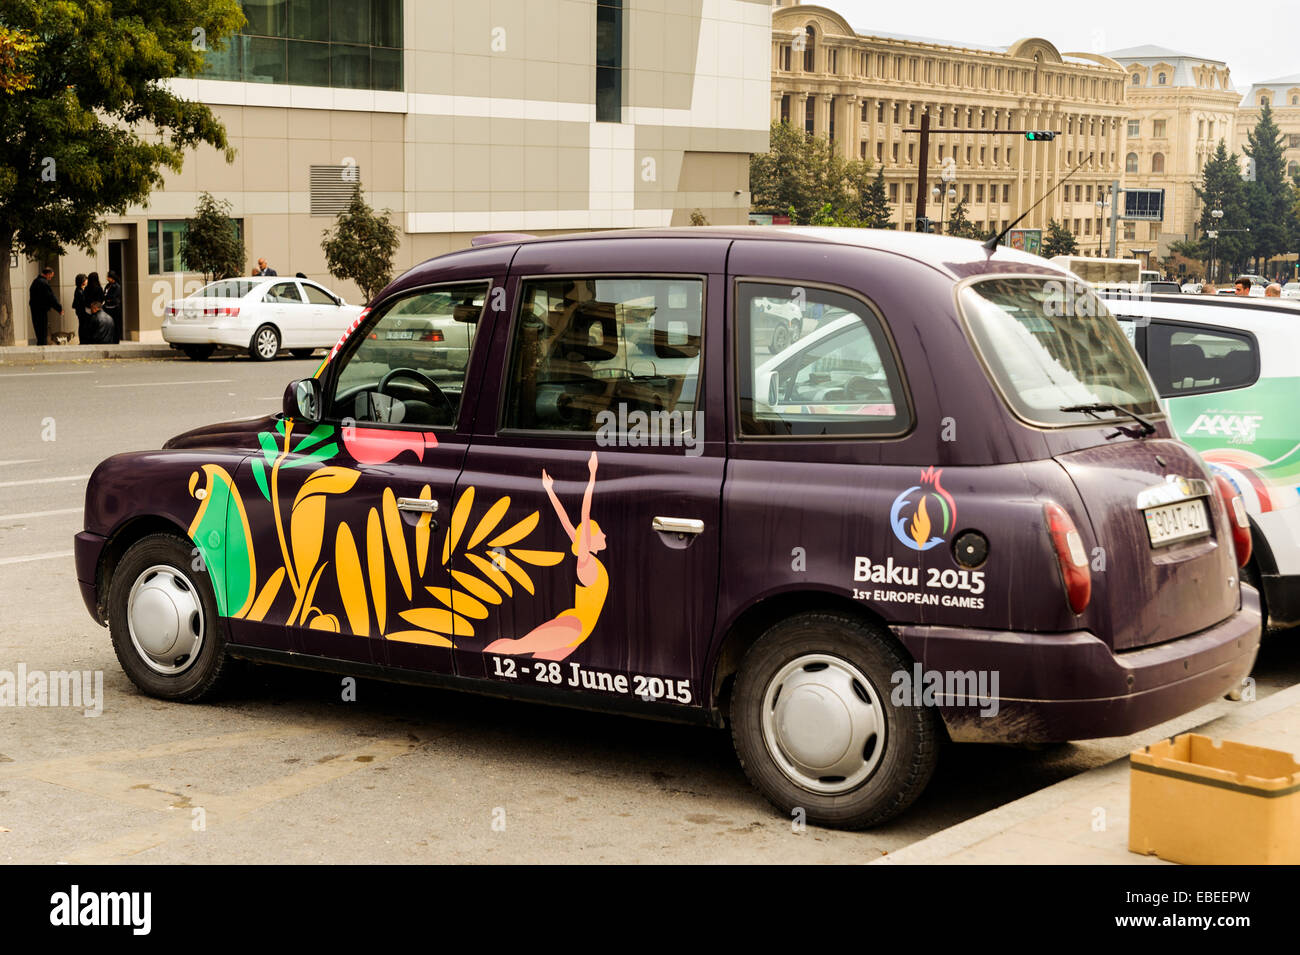 London Style City Taxi mit 2015 erste europäische Spiele Werbung in Baku, Aserbaidschan. Stockfoto